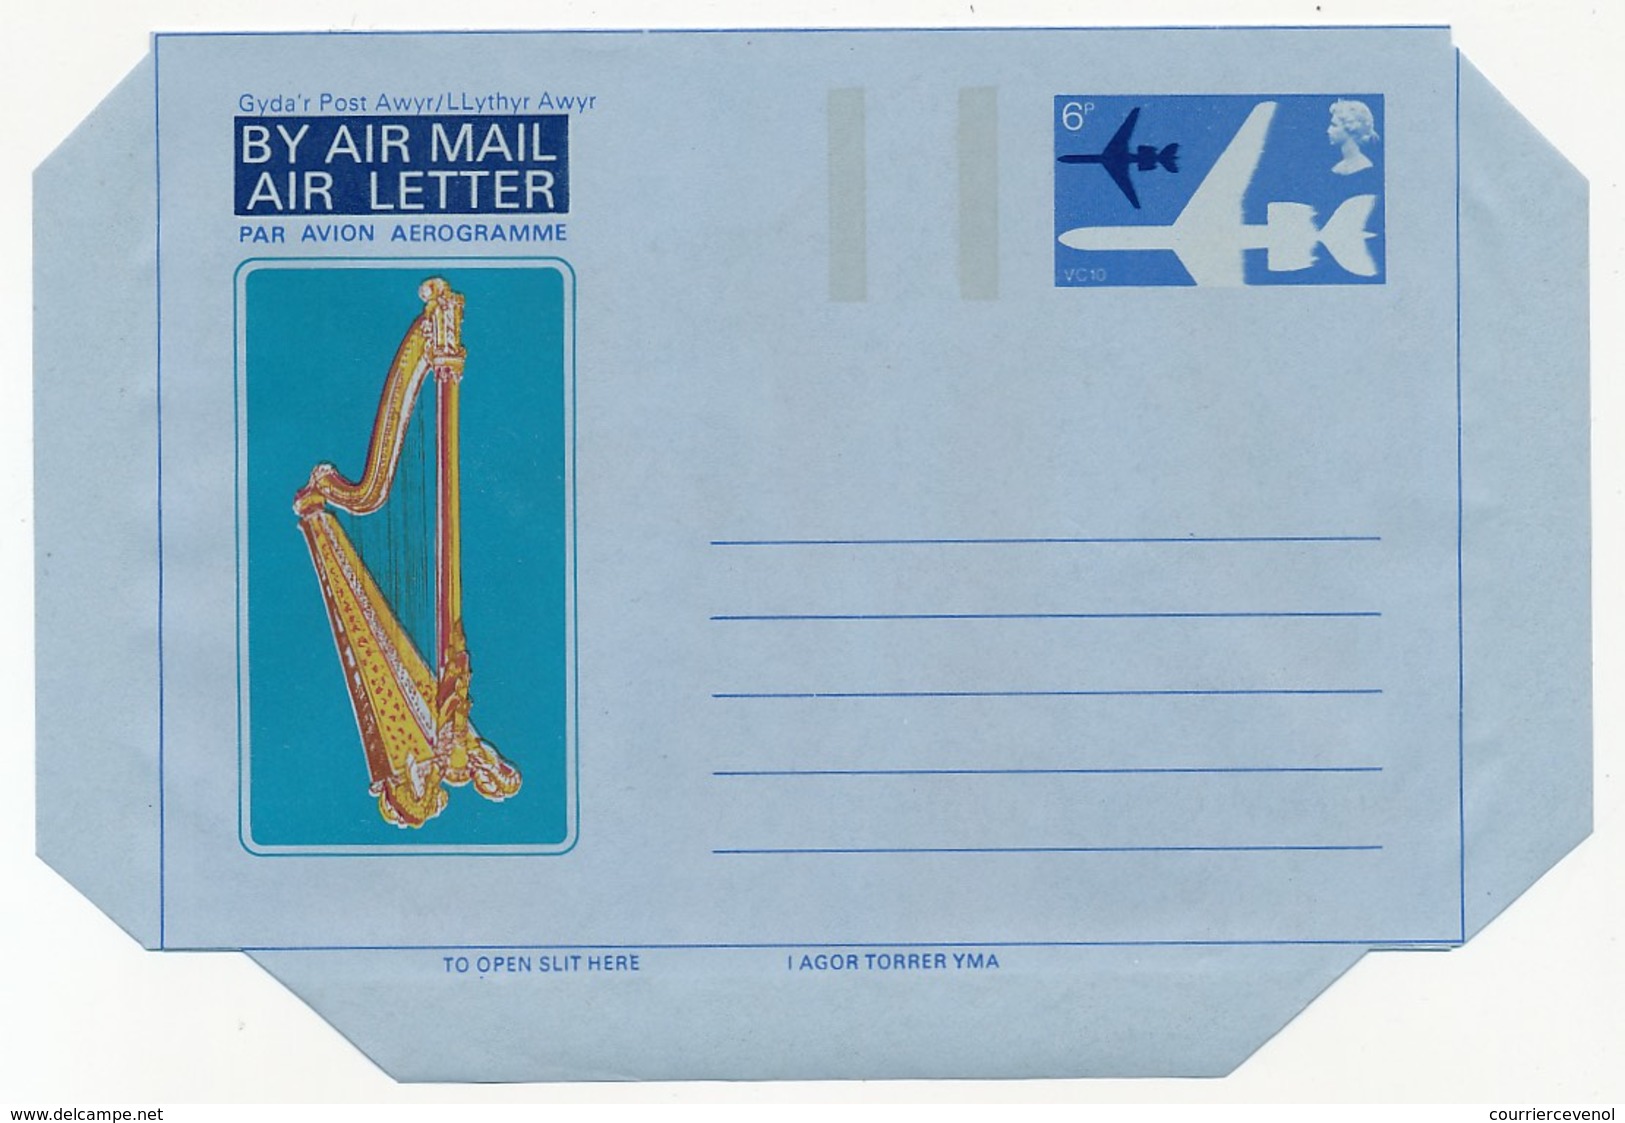 GRANDE BRETAGNE - 10 aérogrammes différents (entiers postaux) neufs et oblitérés